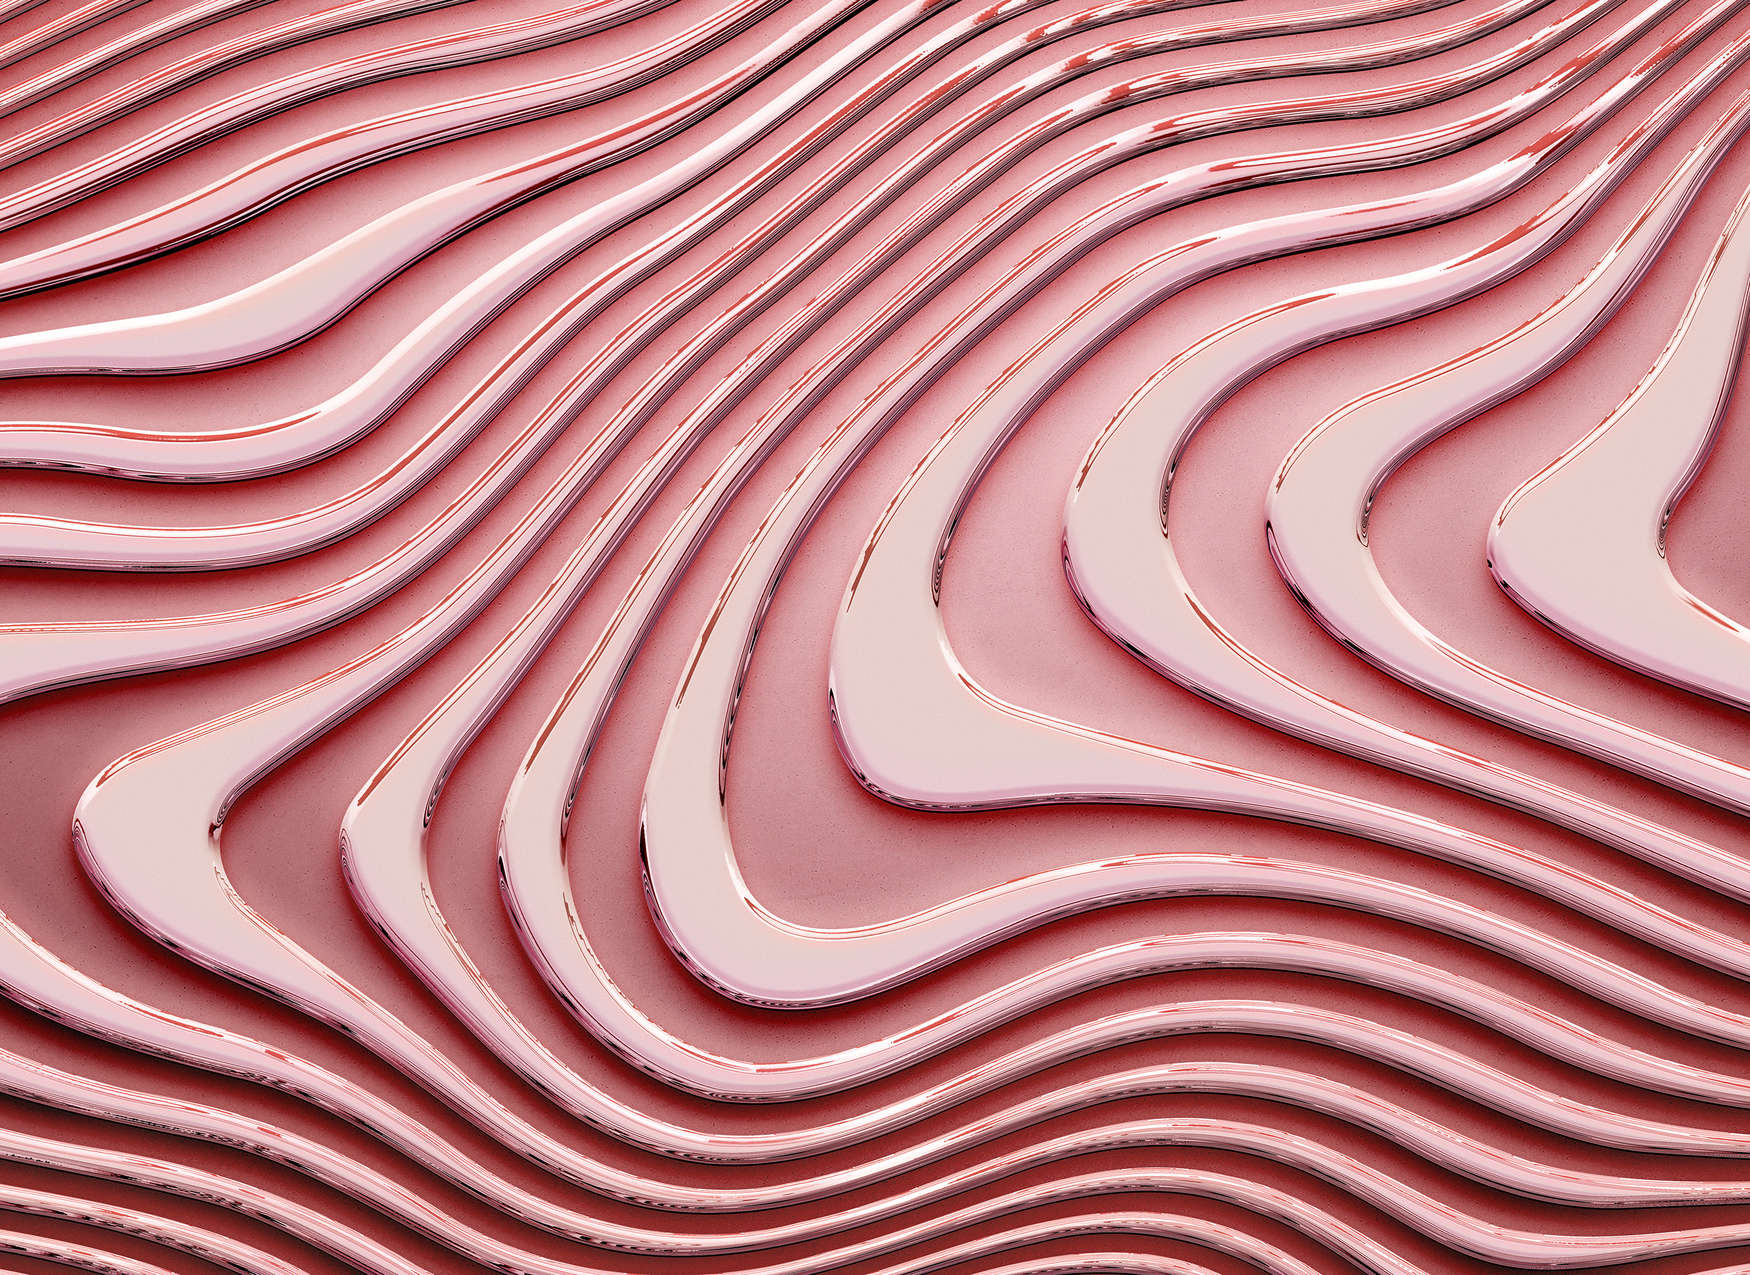             Papier peint avec des lignes ondulées et des ombres - Rose, Pink
        